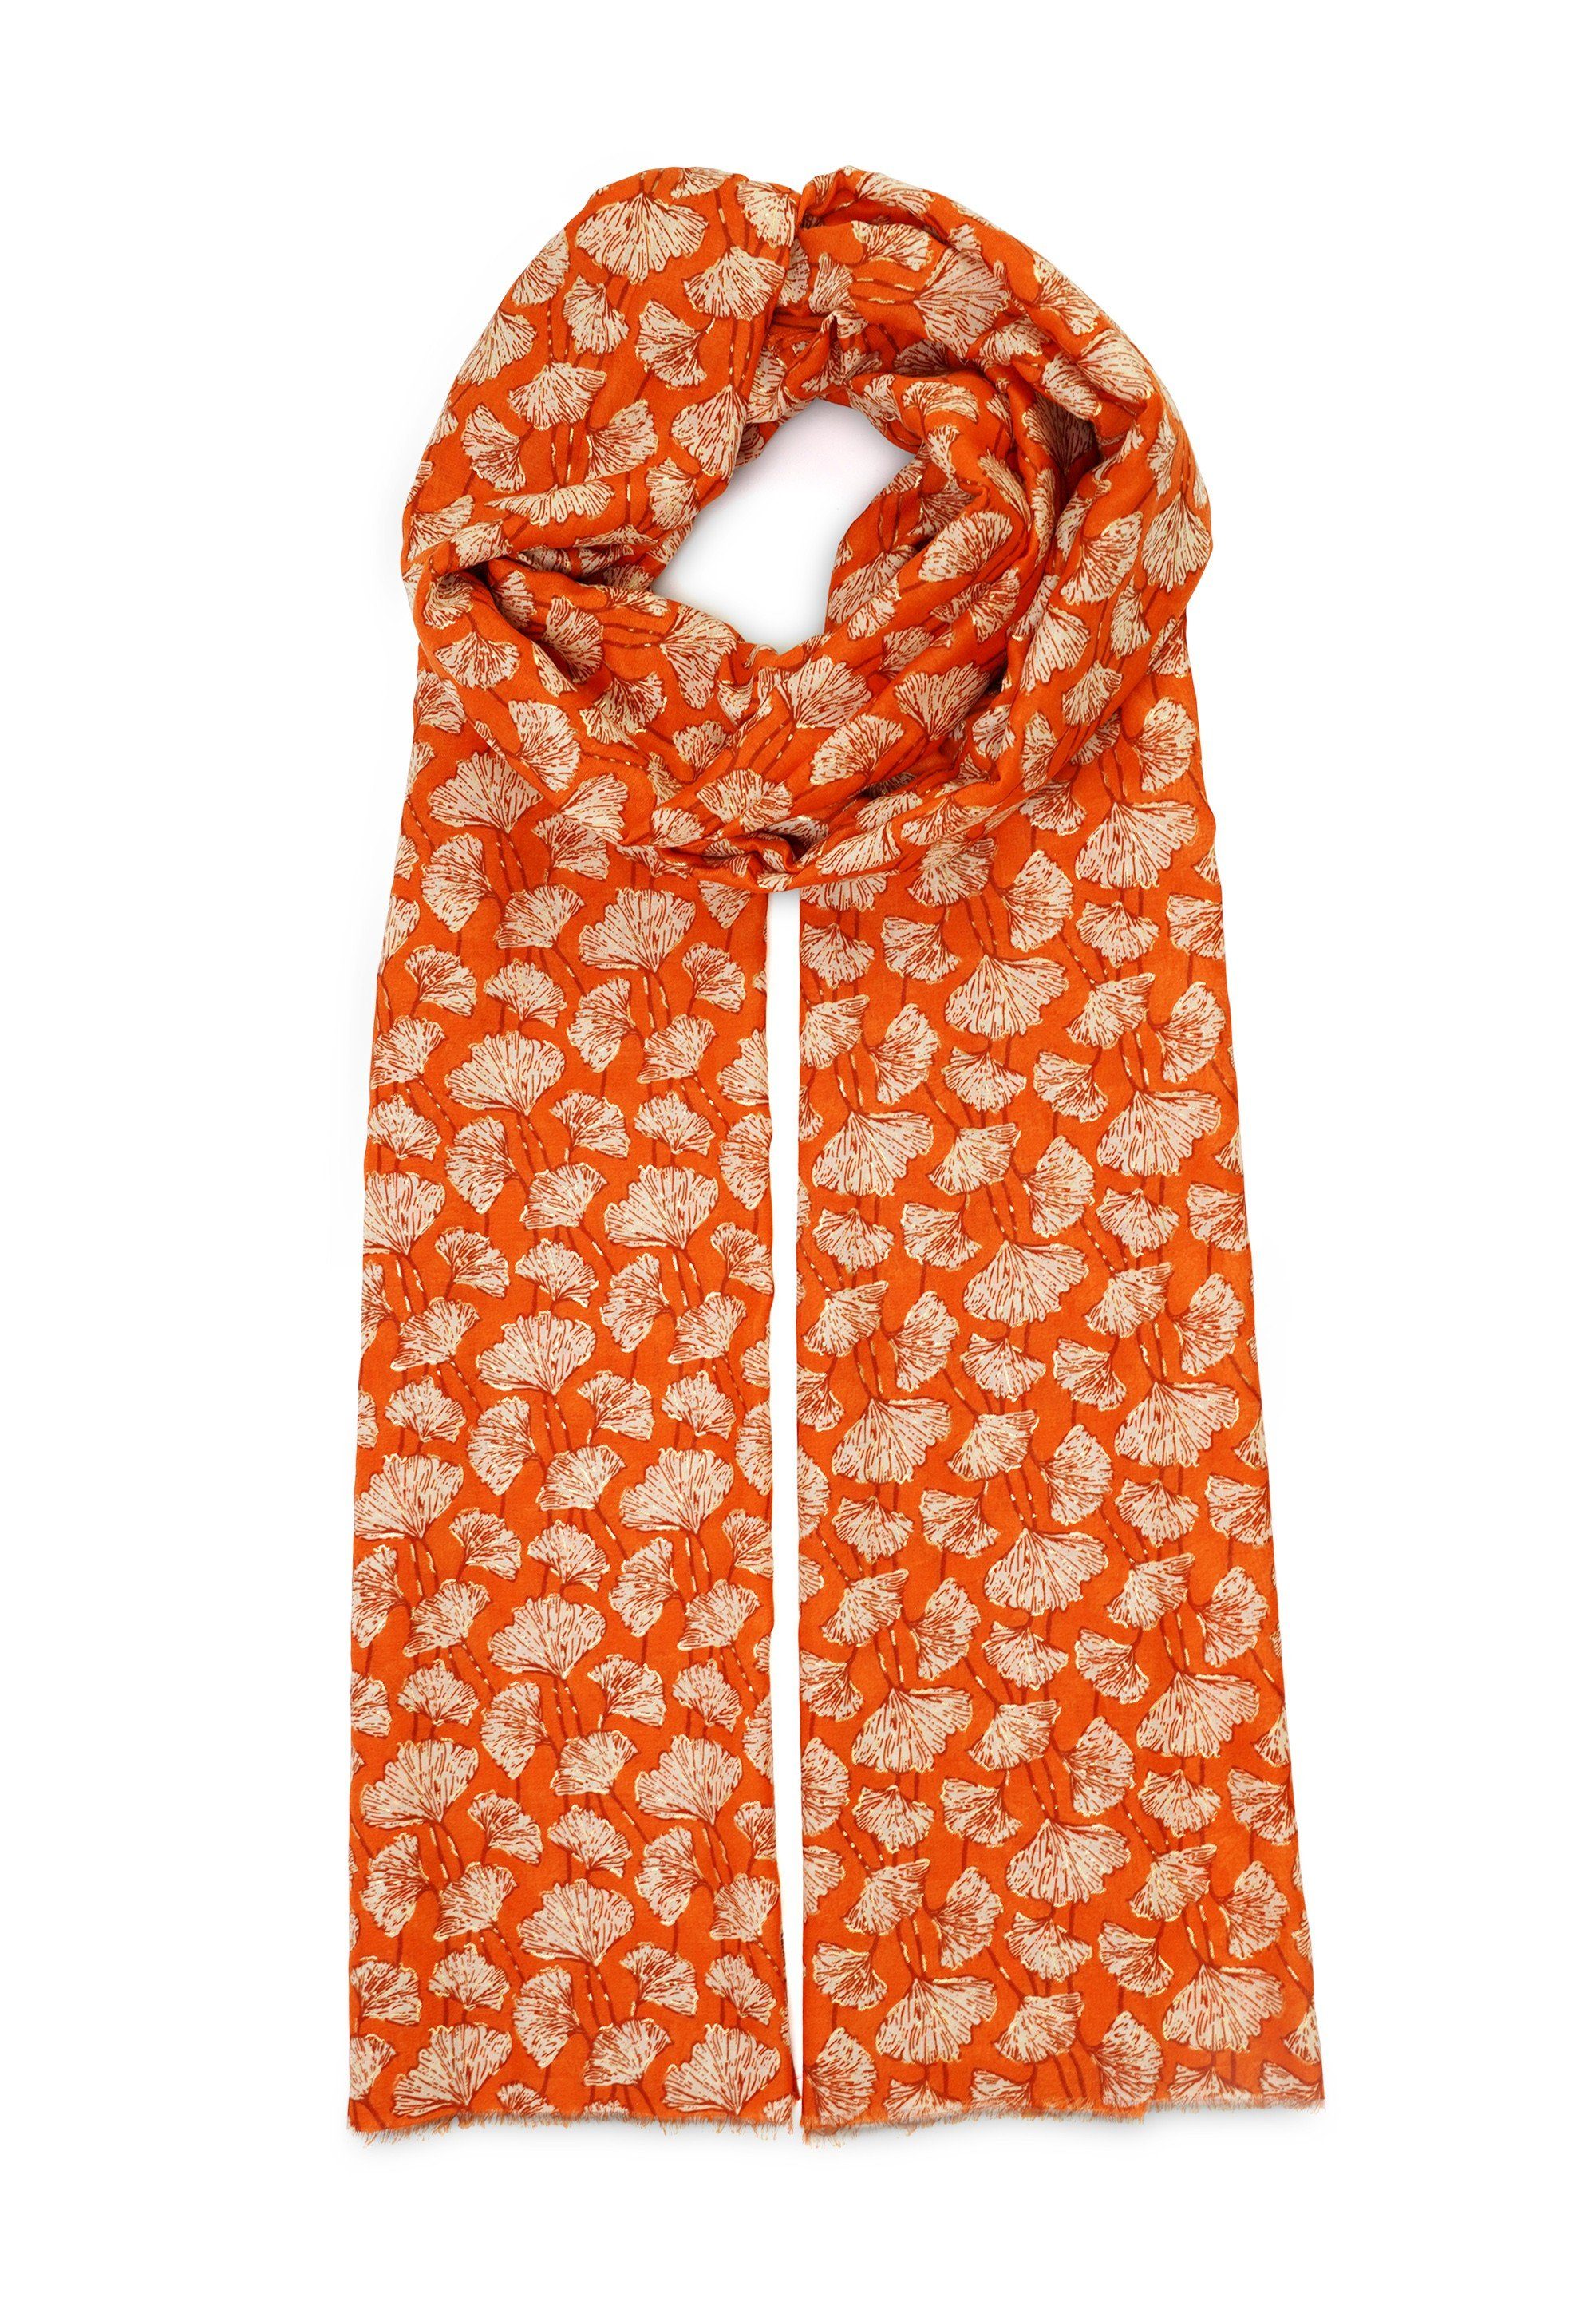 Metallic-Effekt orange Harpa mit Botanik-Print und Modeschal CLOVER,